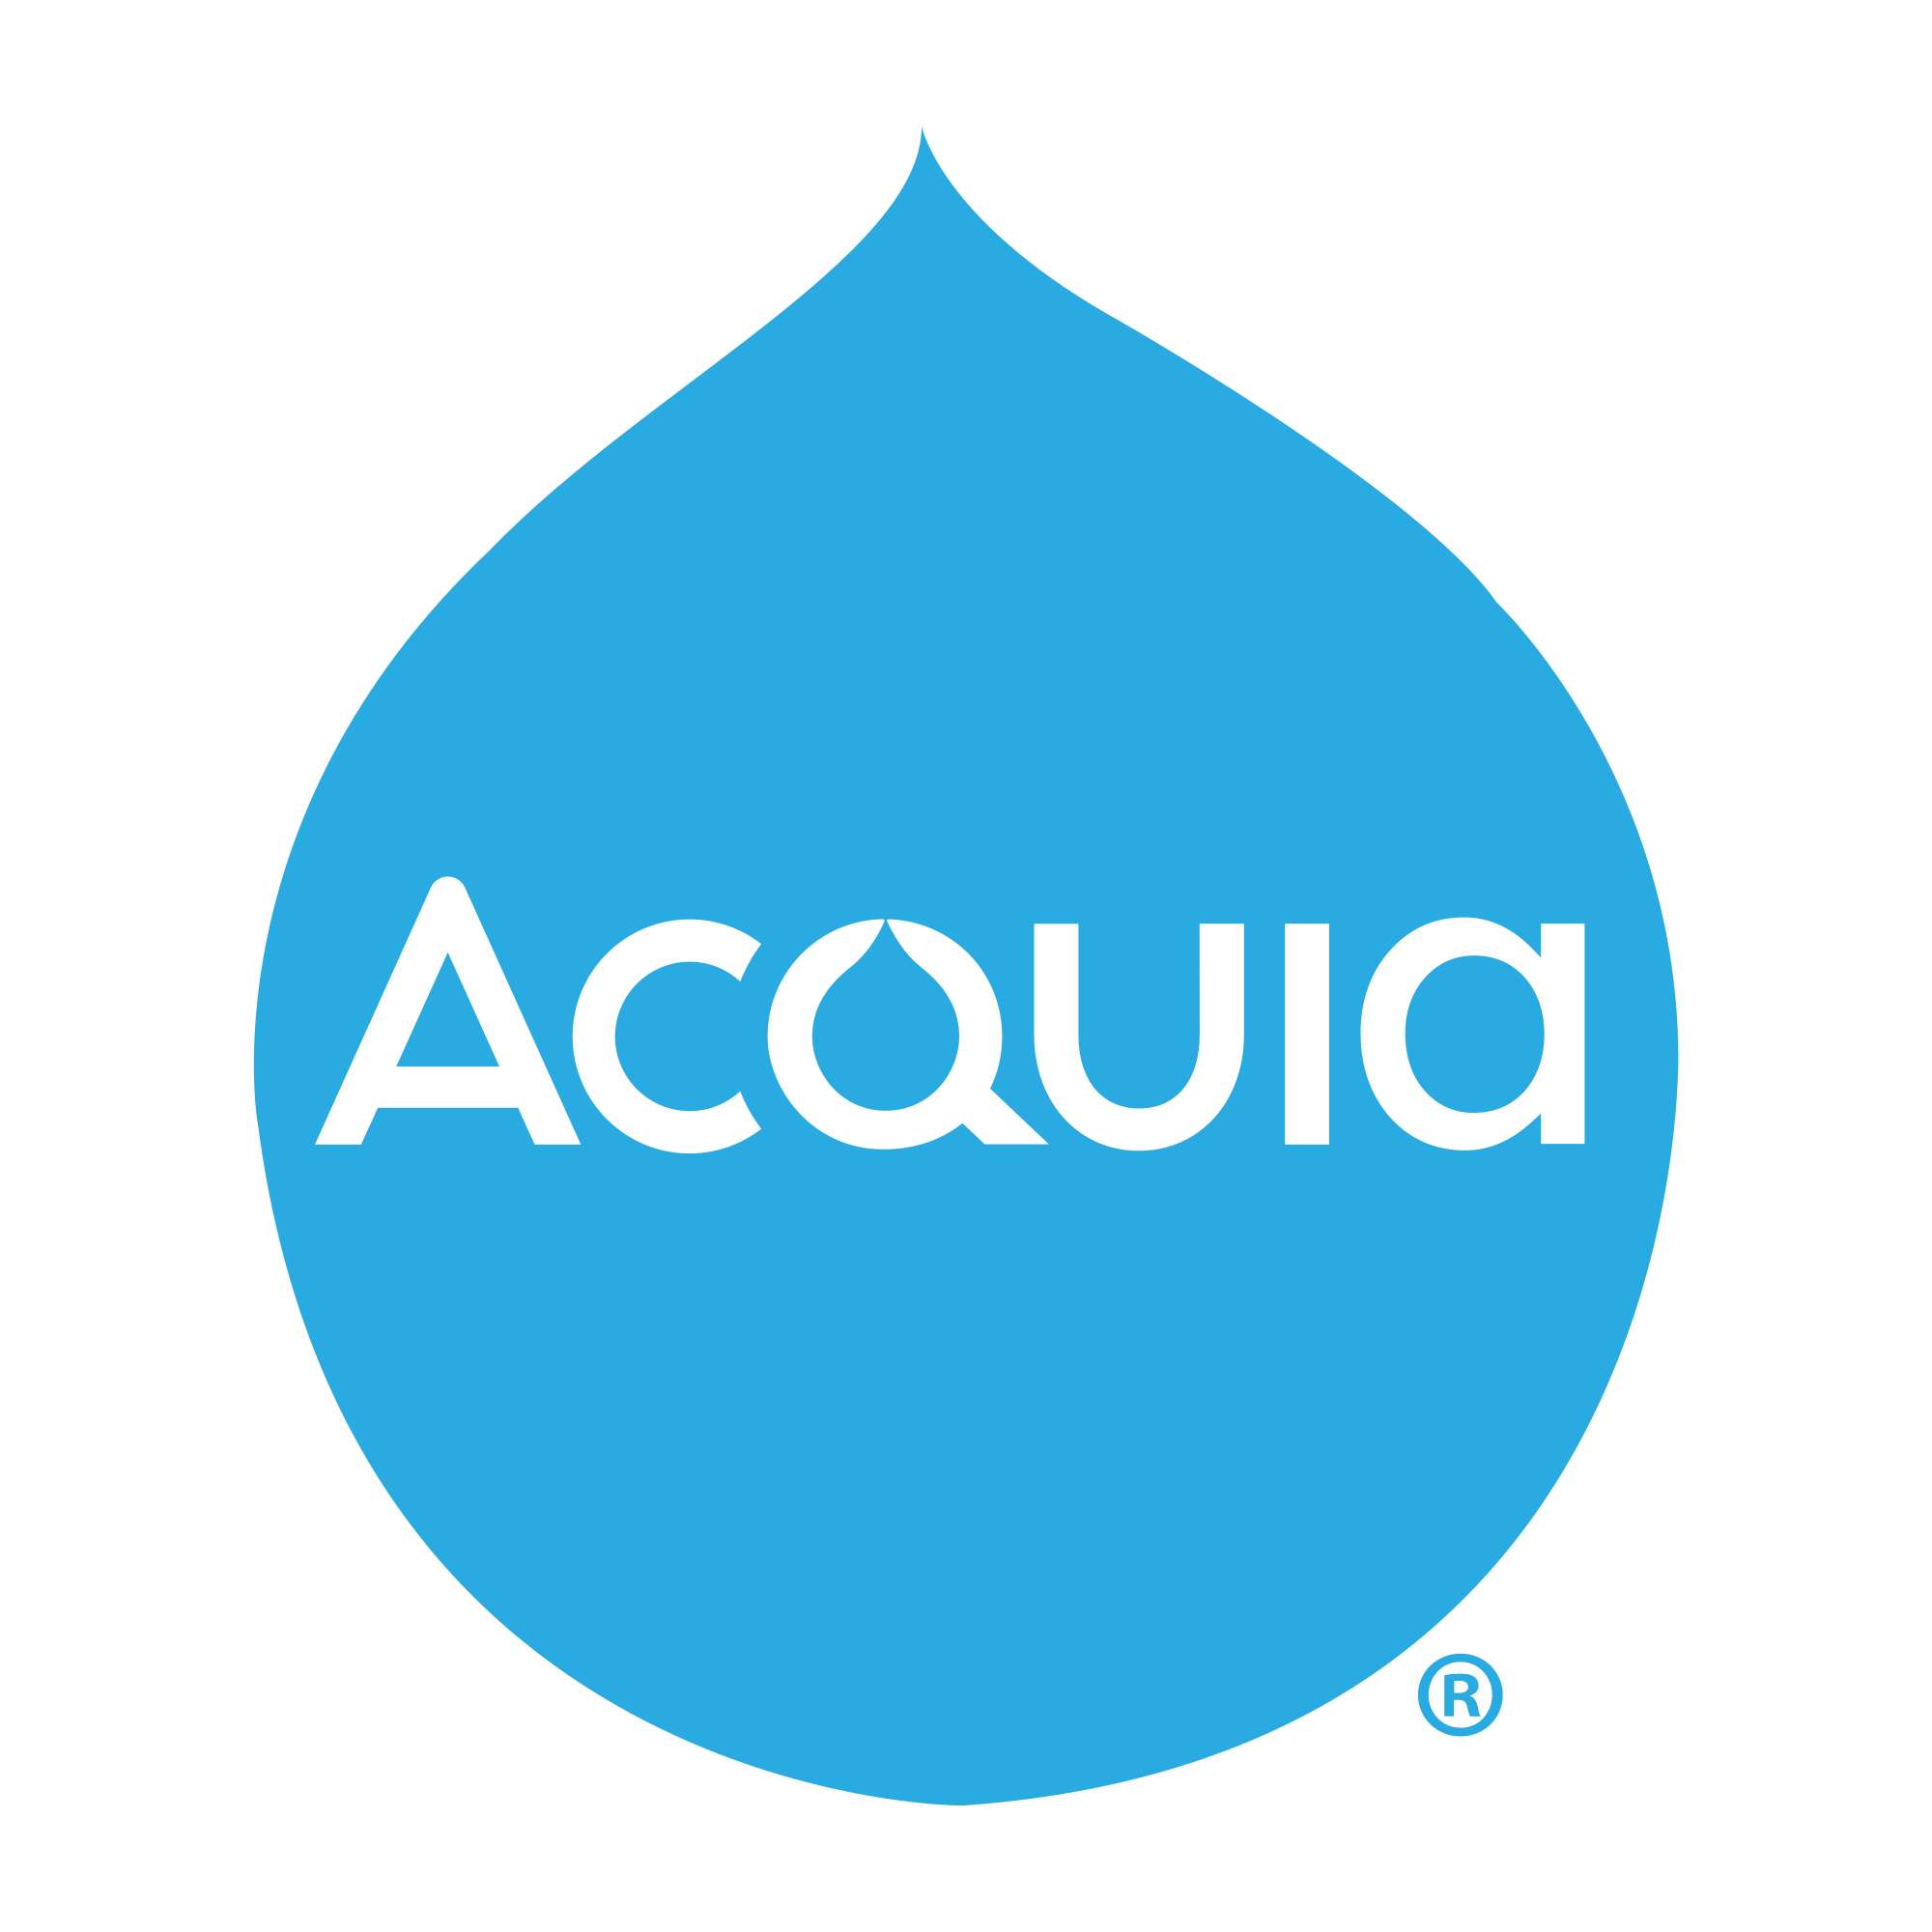 The Acquia logo